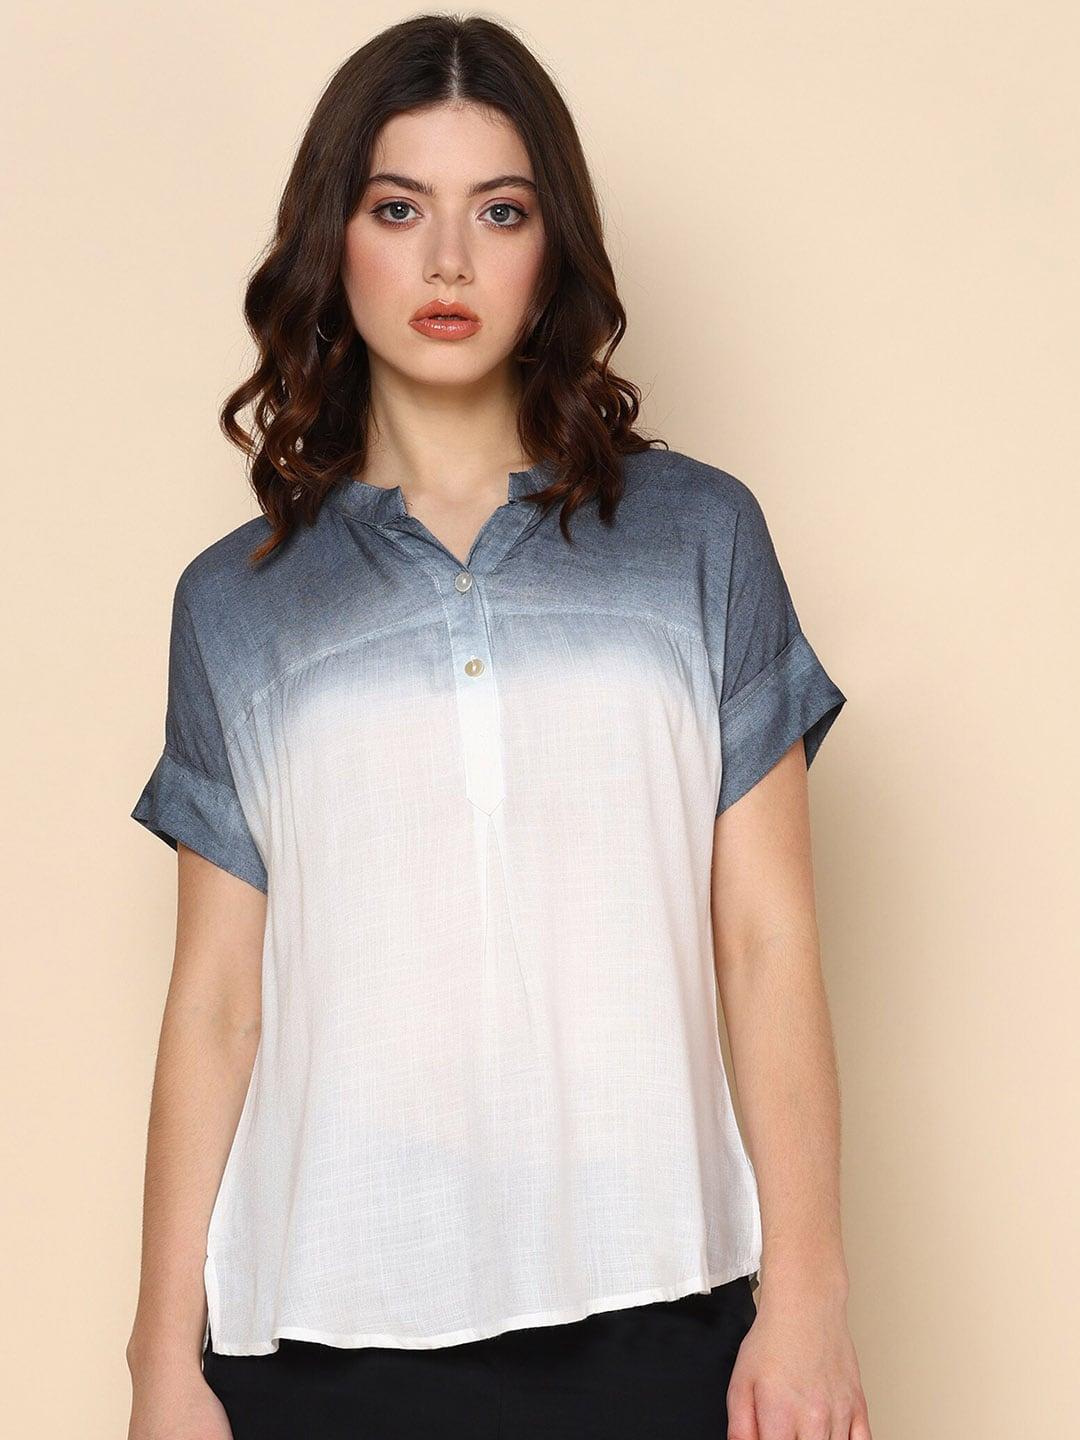 Maaesa Tie & Dye Dyed Extended Sleeves Crepe Shirt Style Top